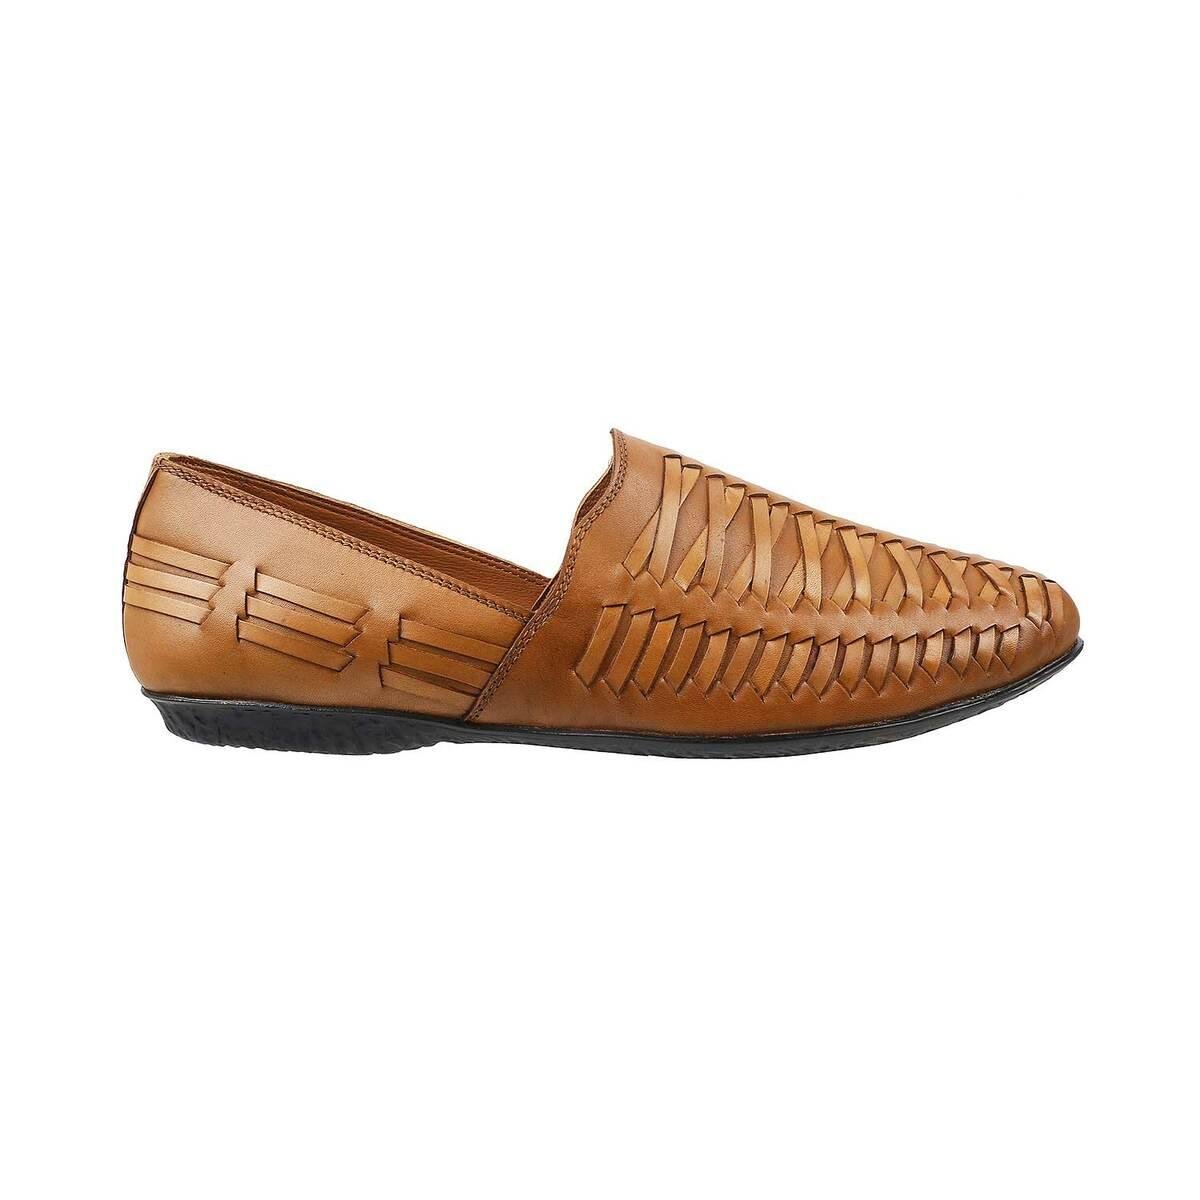 Traditional footwear for men below kurta or sherwani | Footwear, Wearable,  Men